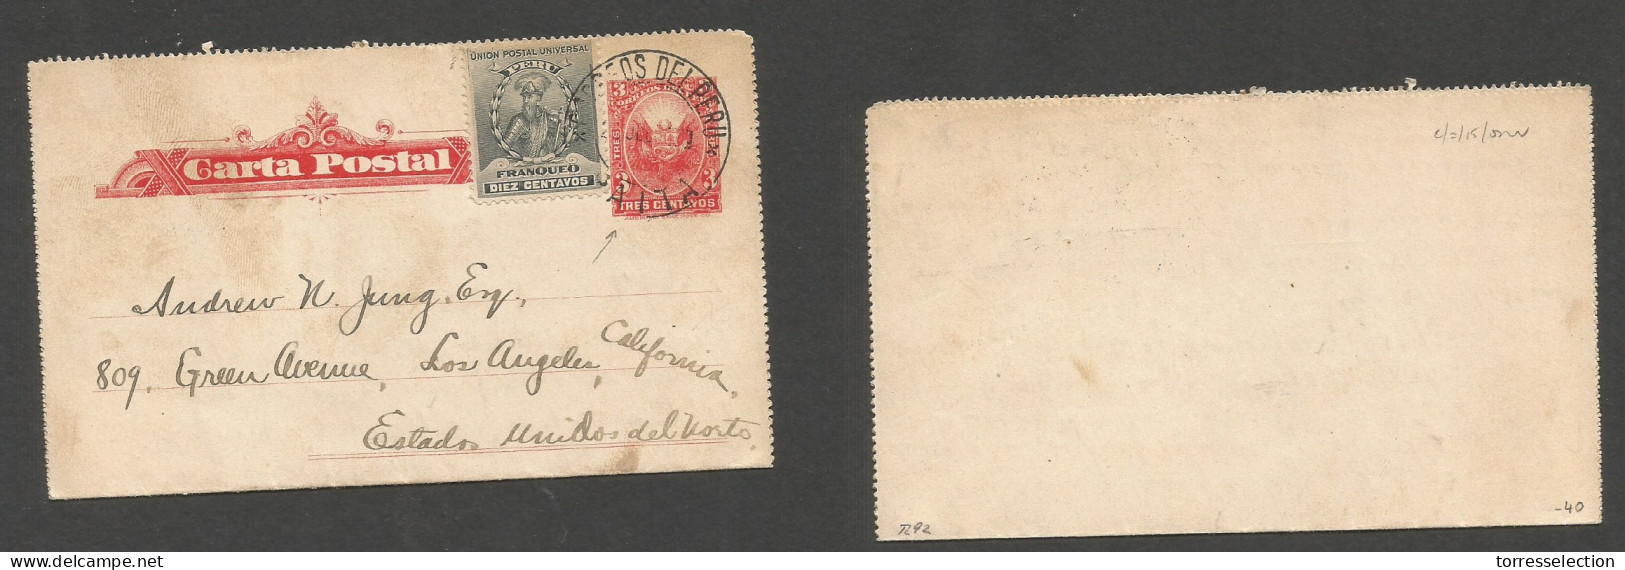 PERU. 1907 (17 July) Payta - USA, LA. 3c Red Stat Lettersheet + Adtl, Tied Cds. Fine. - Perú